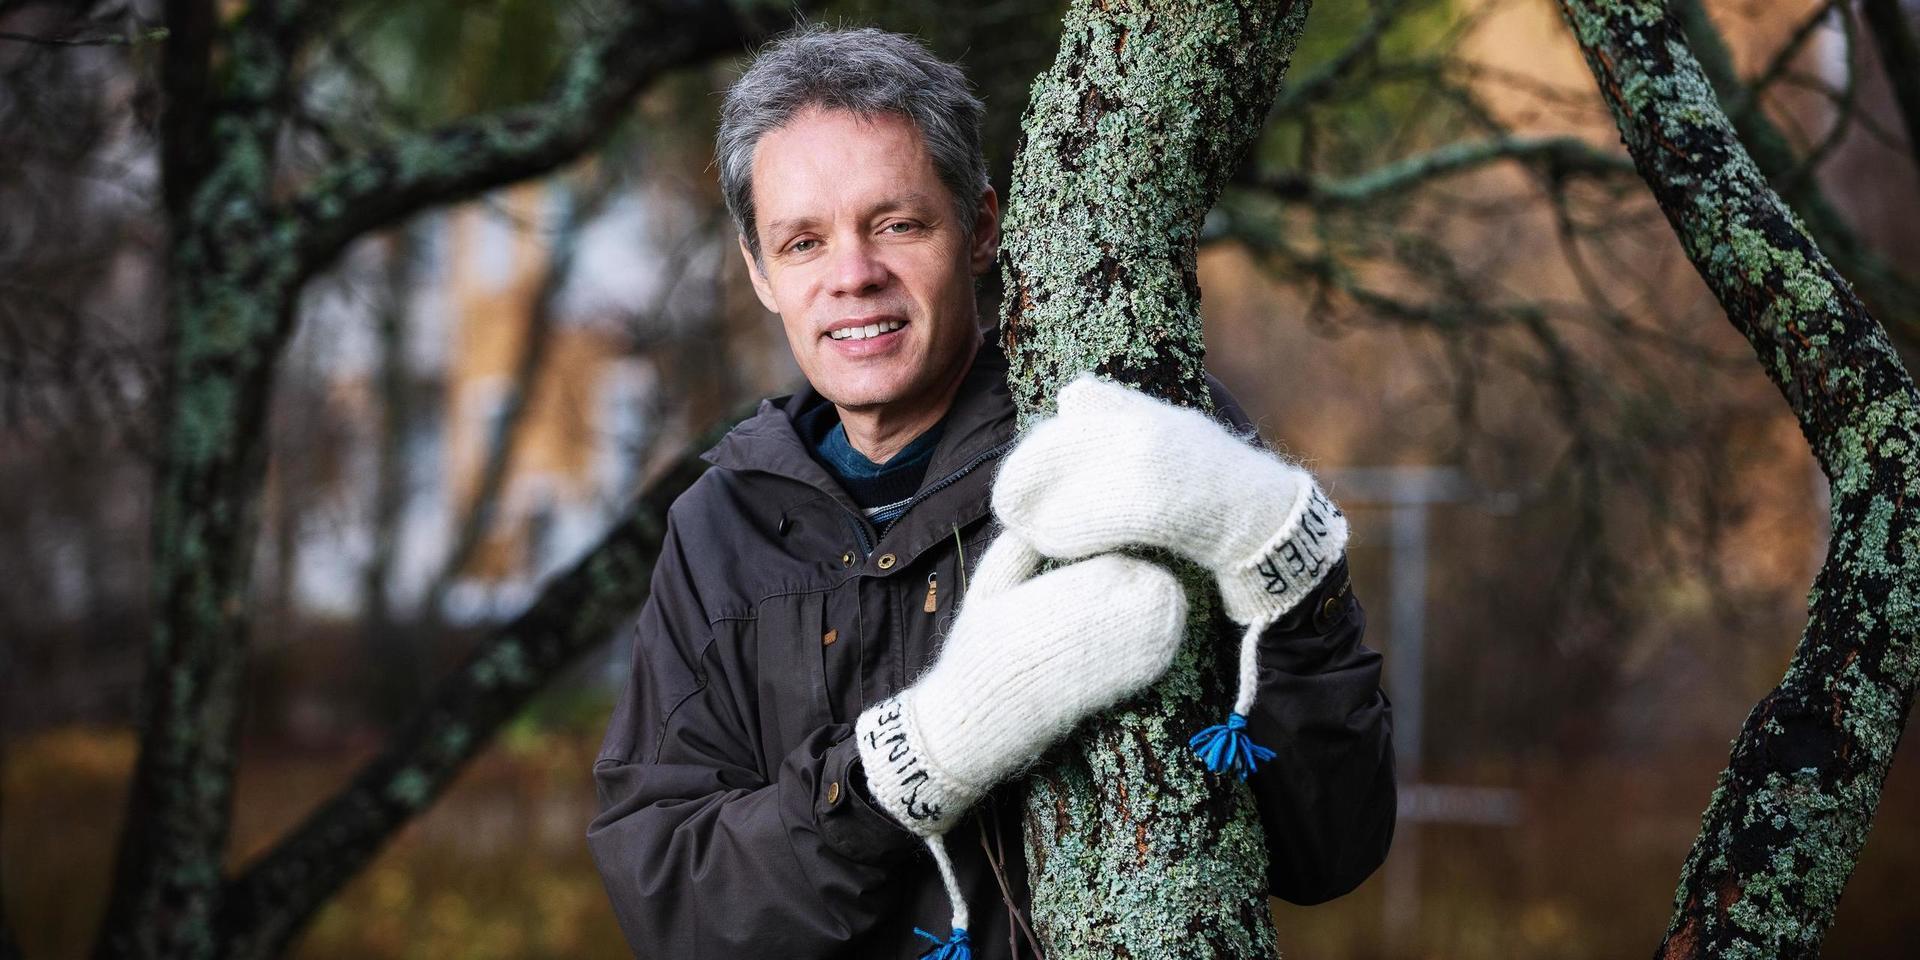 Fysikprofessorn Ulf Danielsson i tjocka ullvantar. Poserar vid ett träd inför sin medverkan i P1 Sveriges Radios Vinter i P1.